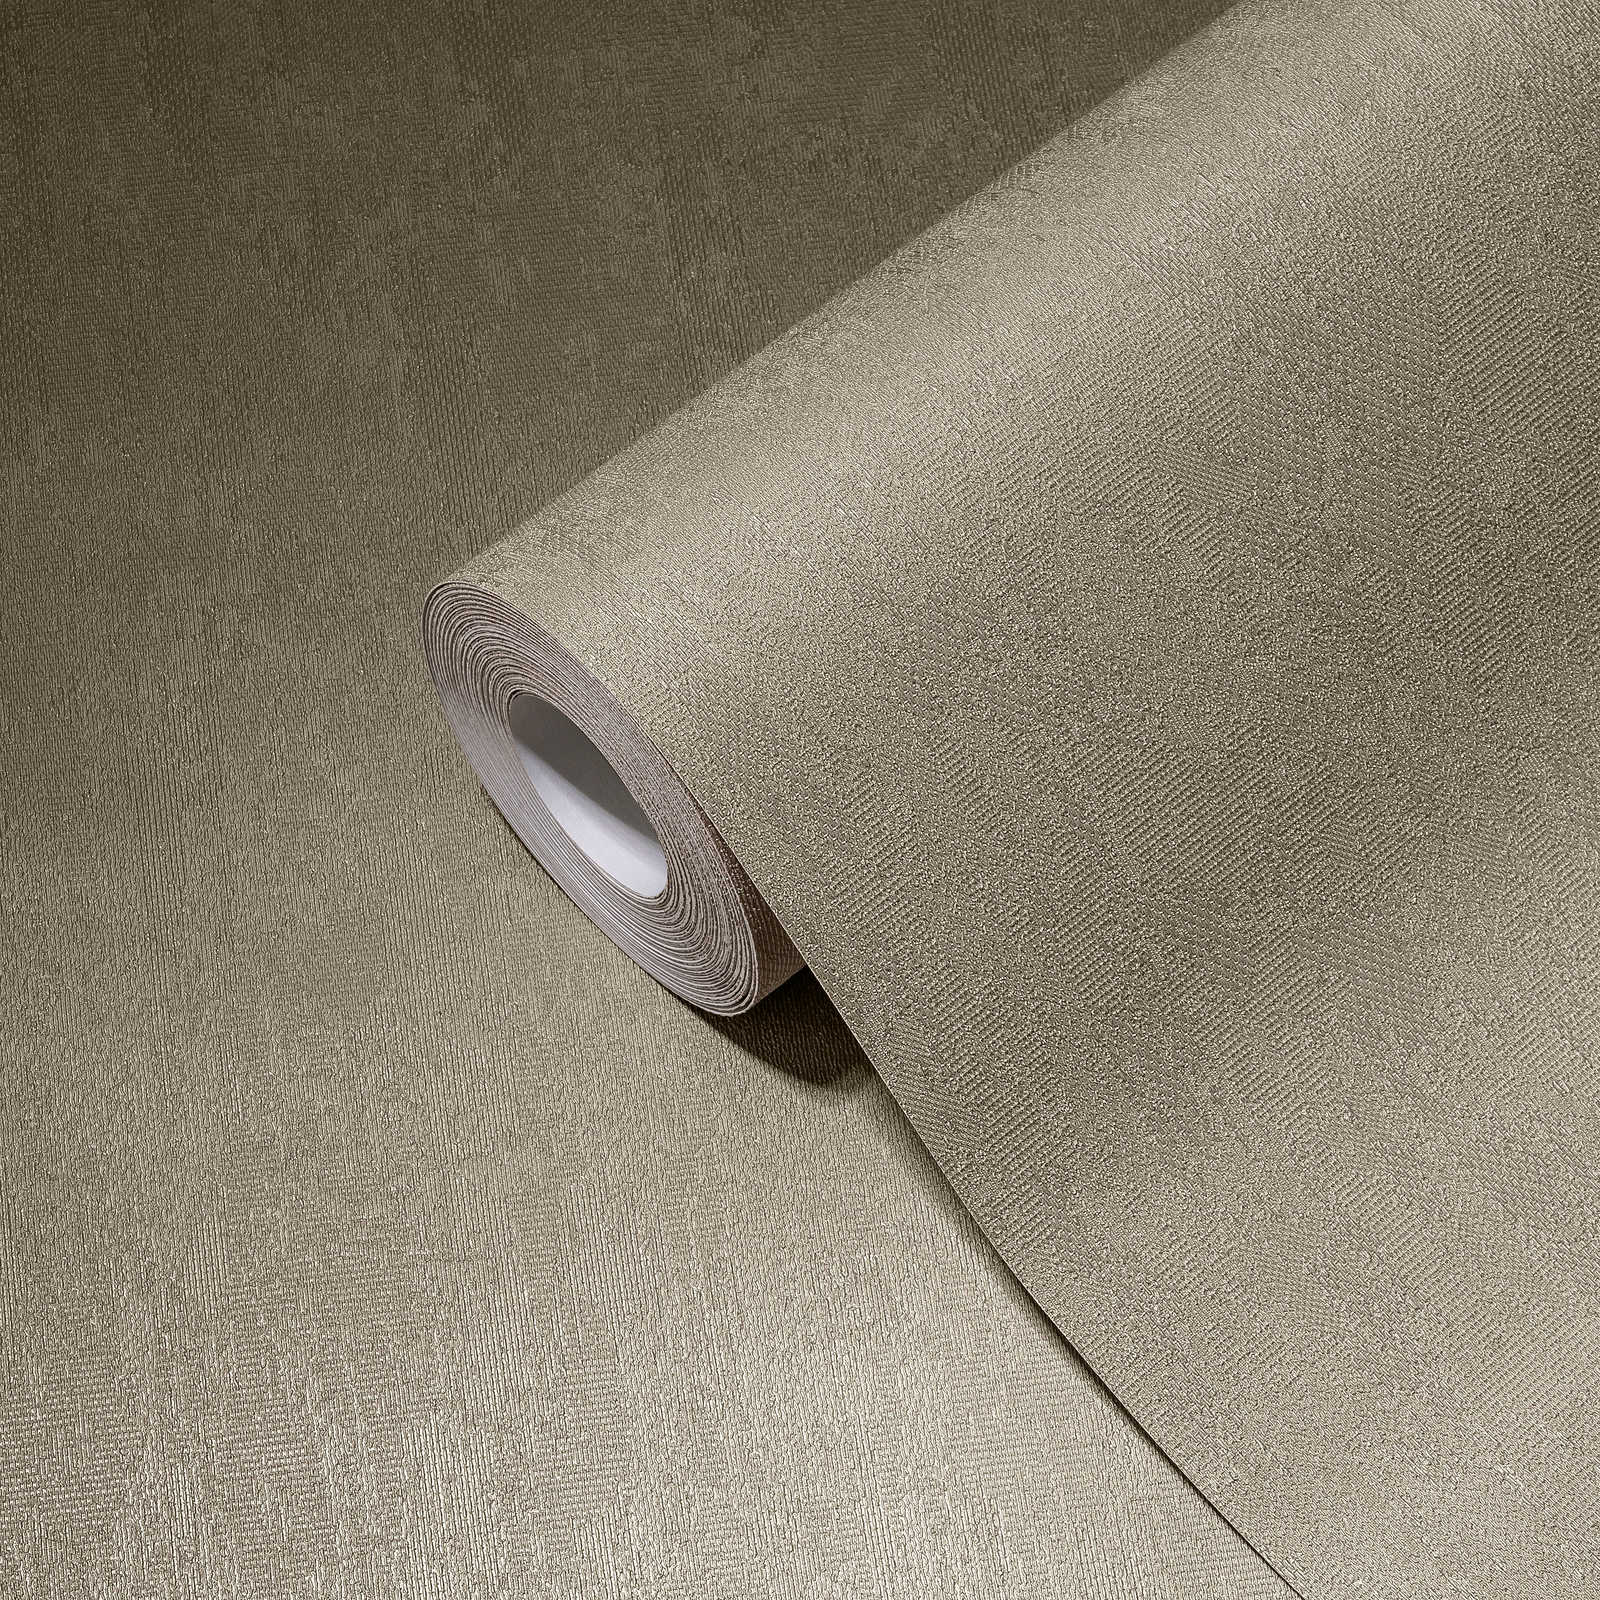             Neutraal eenheidsbehang grijs-beige met structuur oppervlak
        